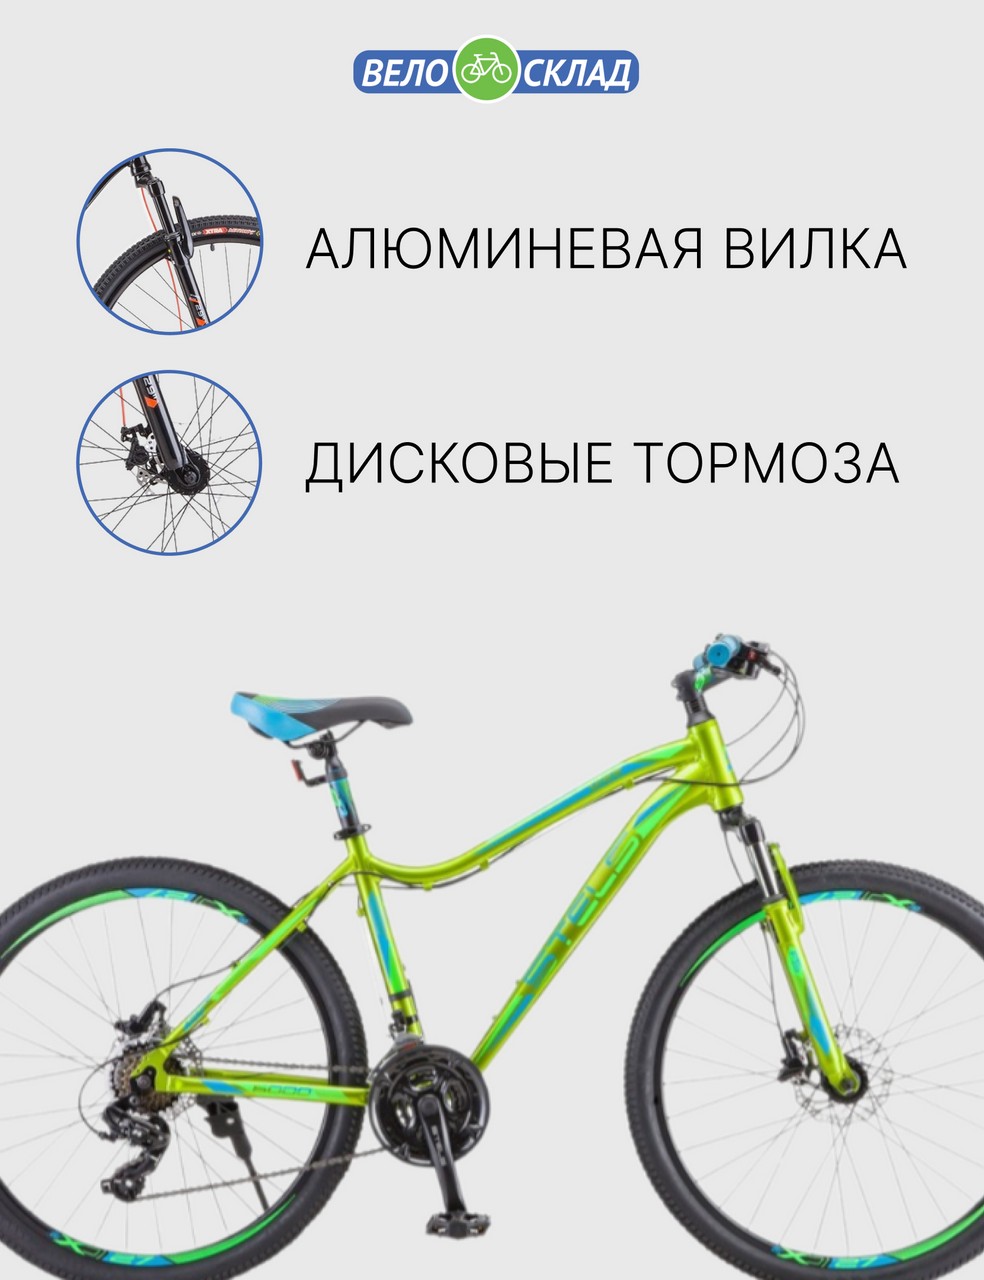 Женский велосипед Stels Miss 6000 D V010, год 2022, цвет Желтый-Зеленый, ростовка 15